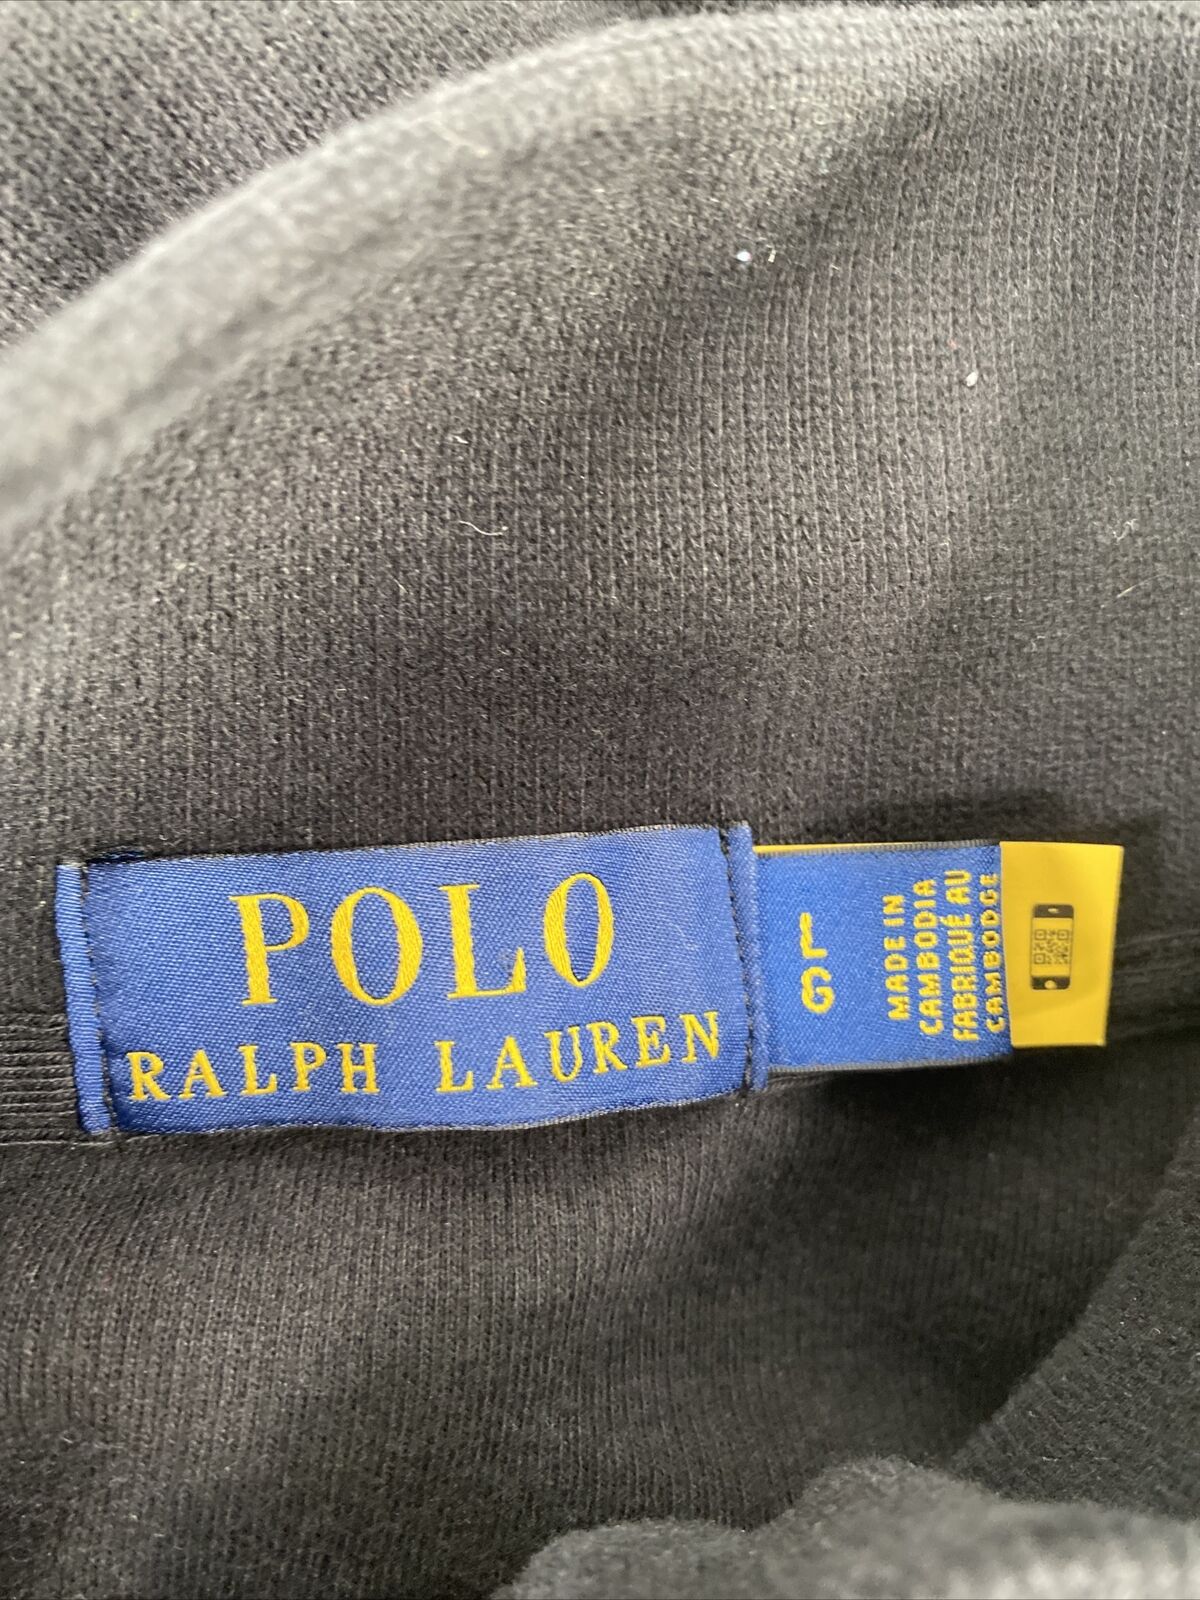 Polo Ralph Lauren Men's Black Long Sleeve 1/4 Zip Pullover Sweater - L